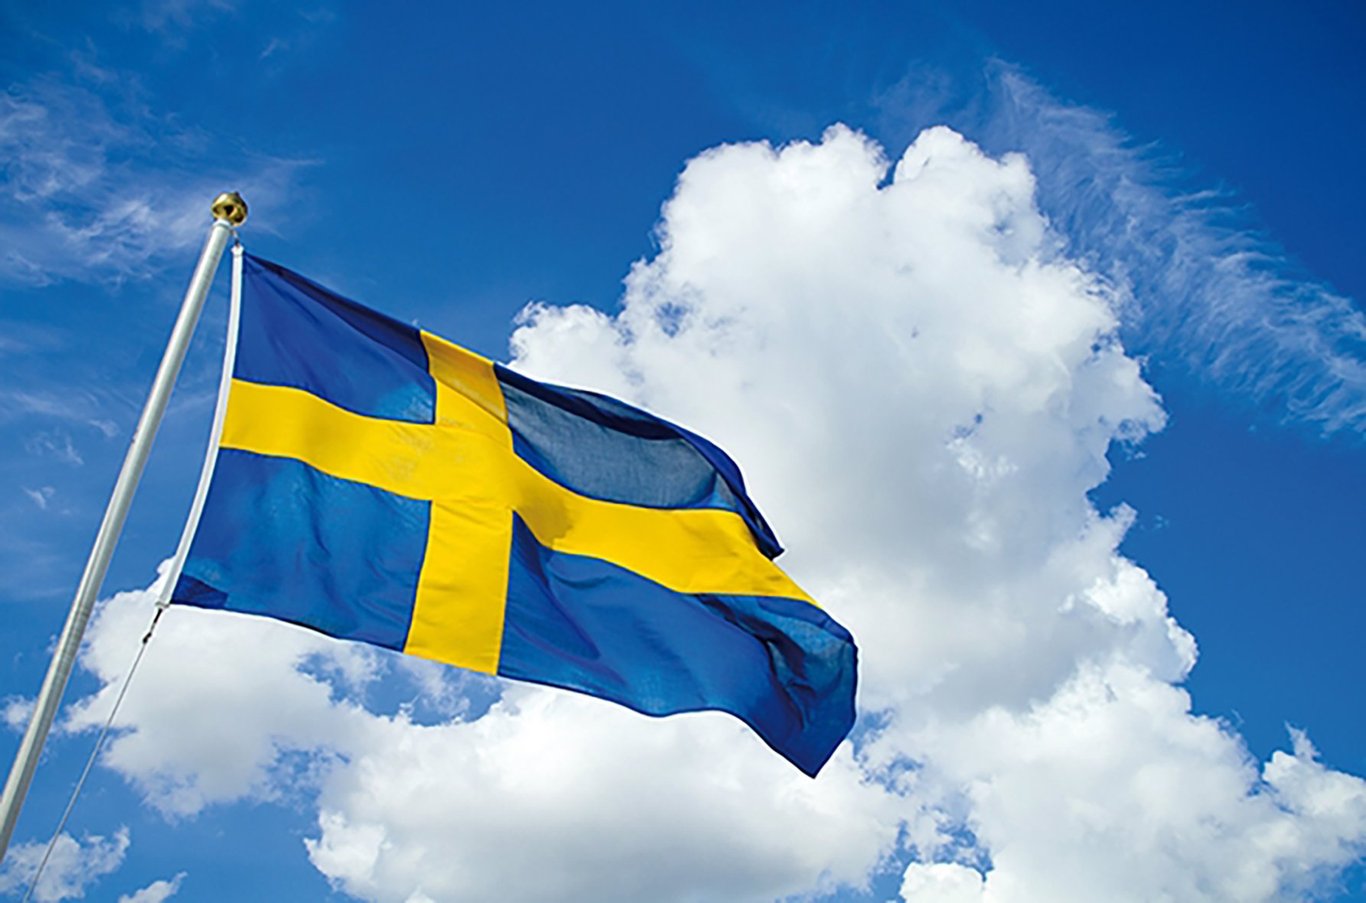 Flagga Svensk 300x200cm 75600217